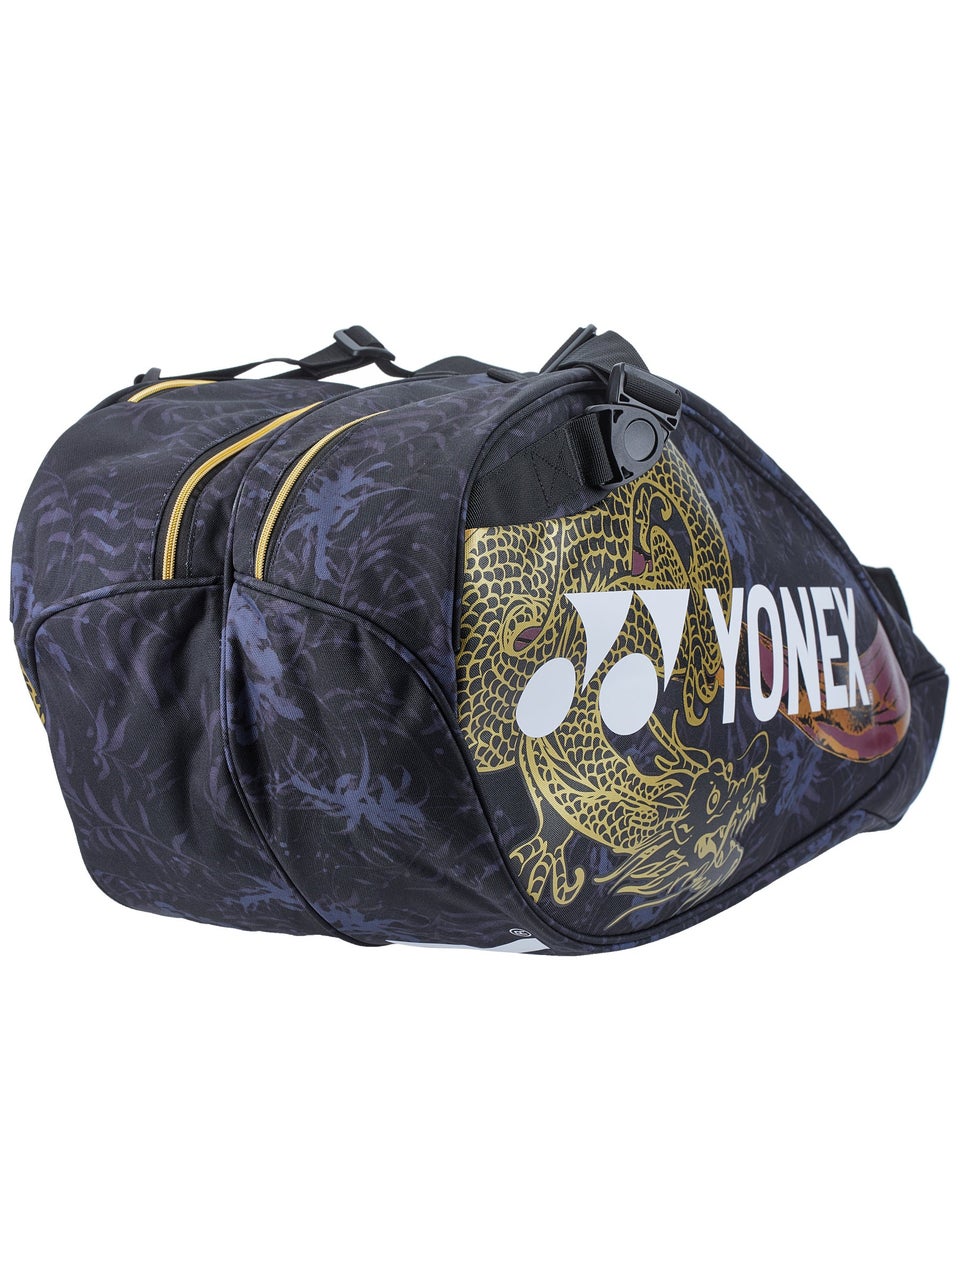 Yonex Osaka 6R Bag